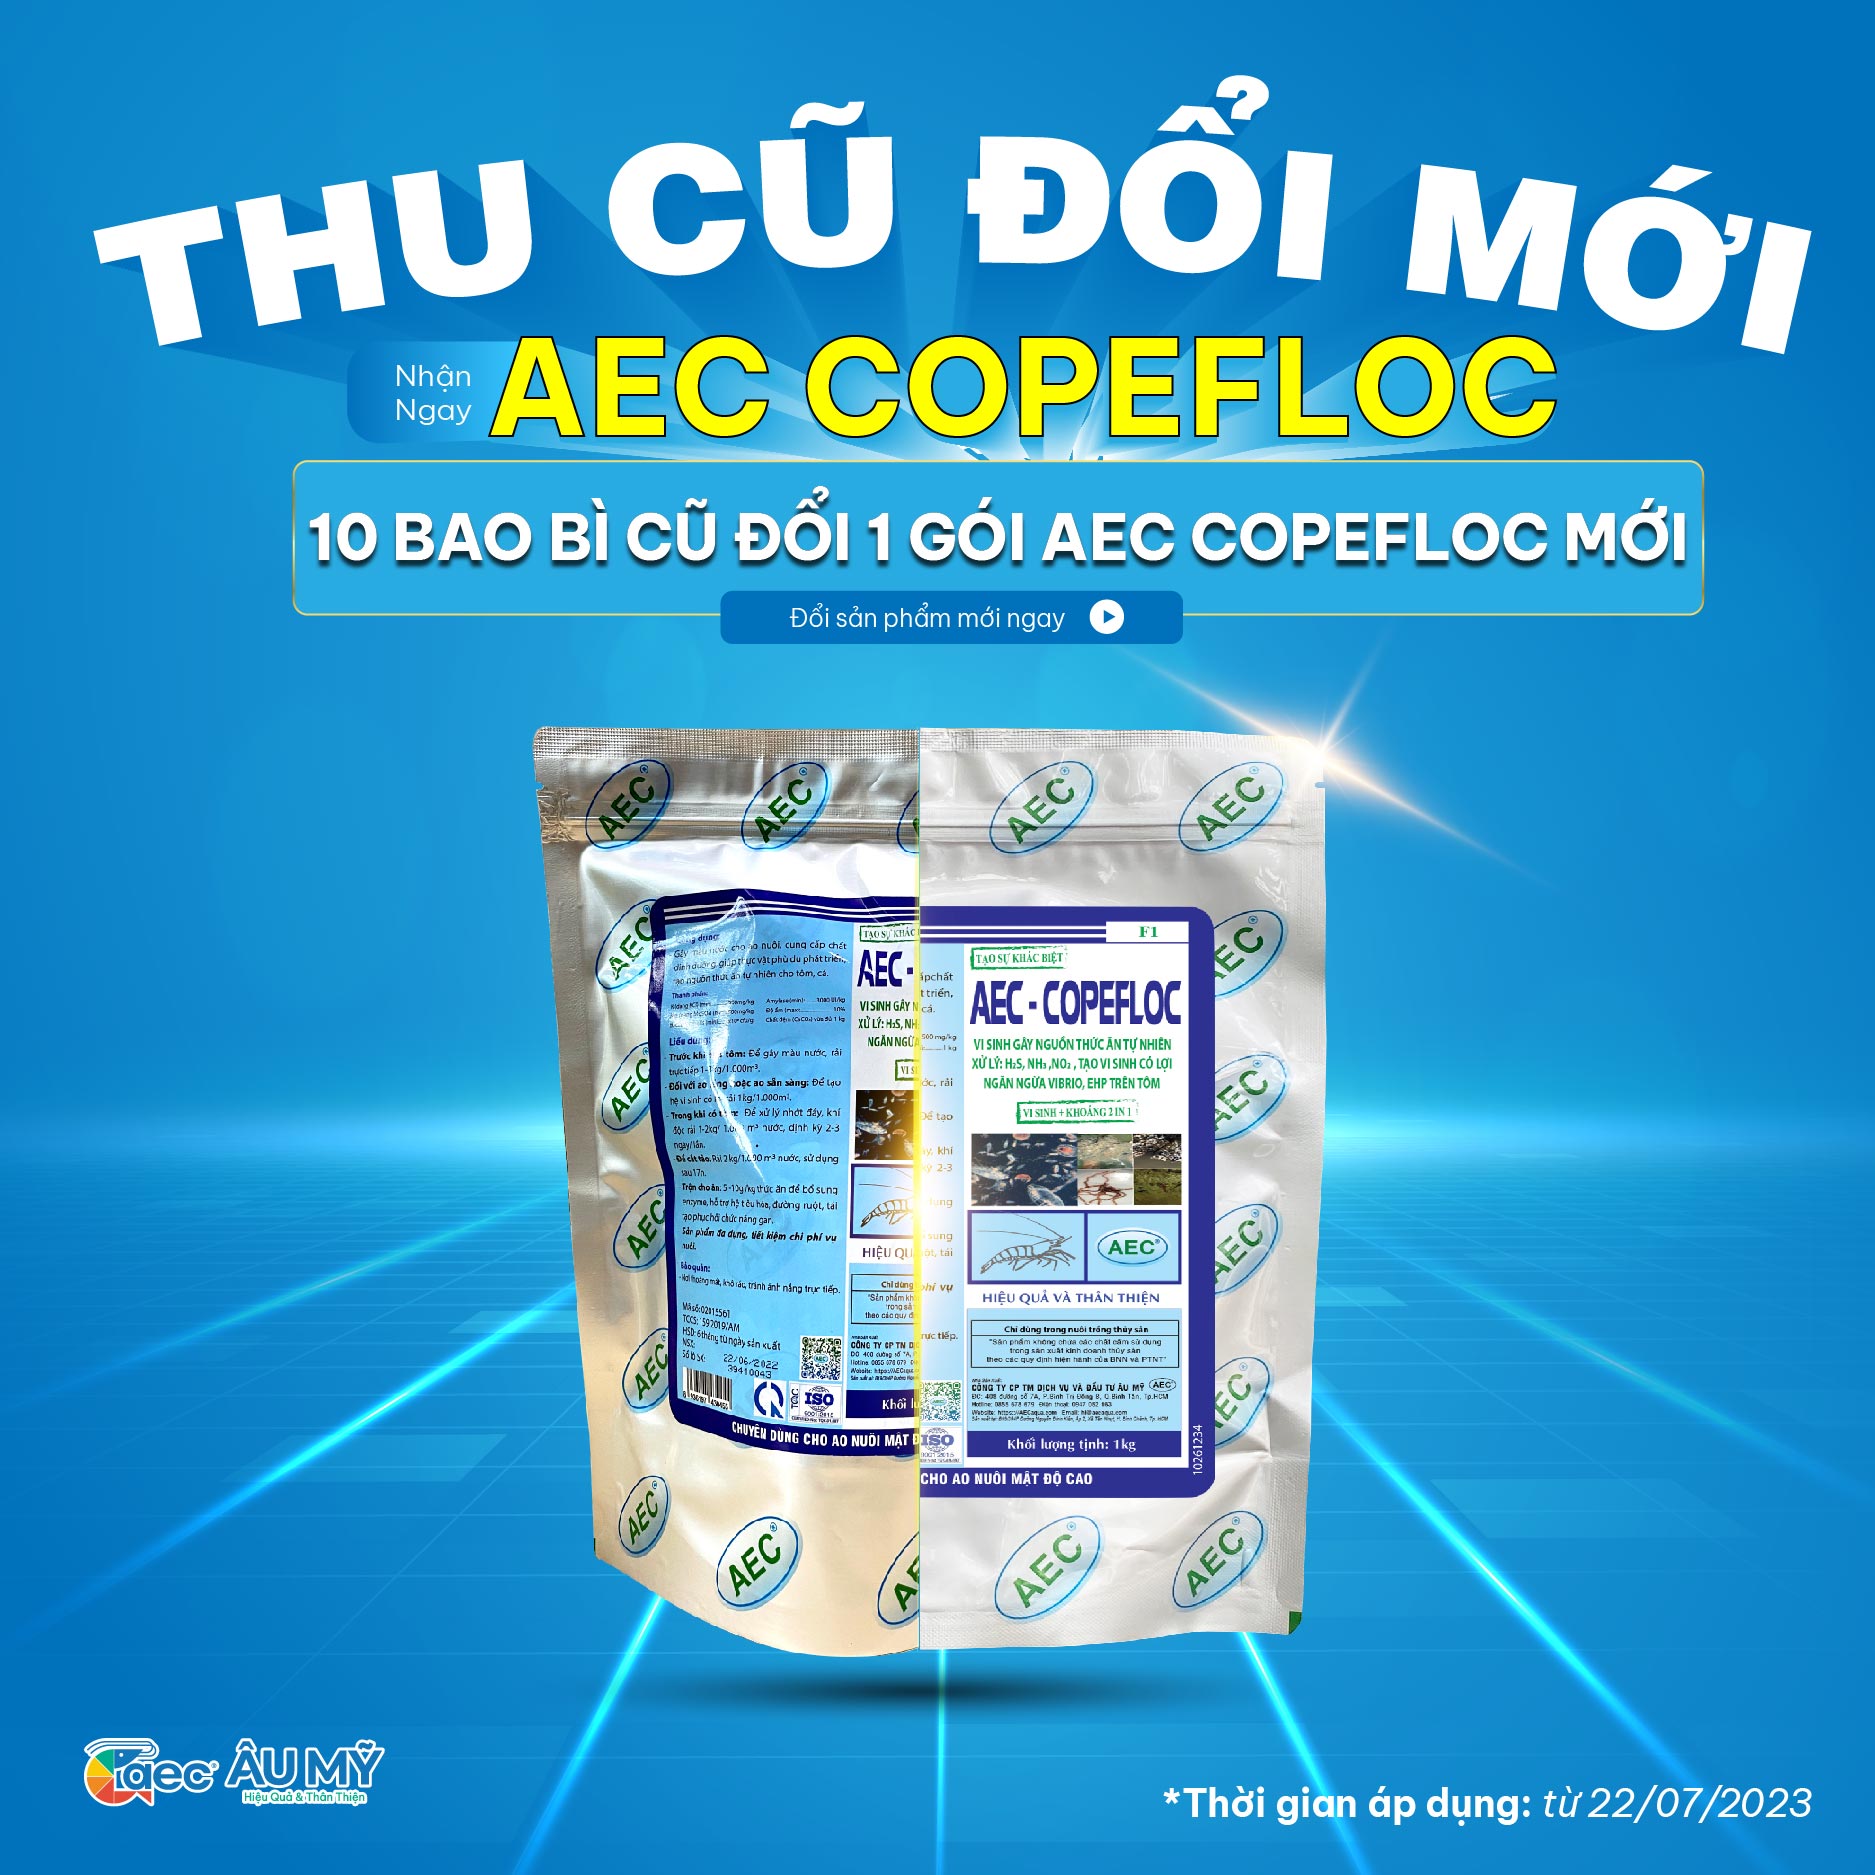 THÔNG BÁO: Chương trình khuyến mãi nhận diện sản phẩm AEC COPEFLOC chính hãng